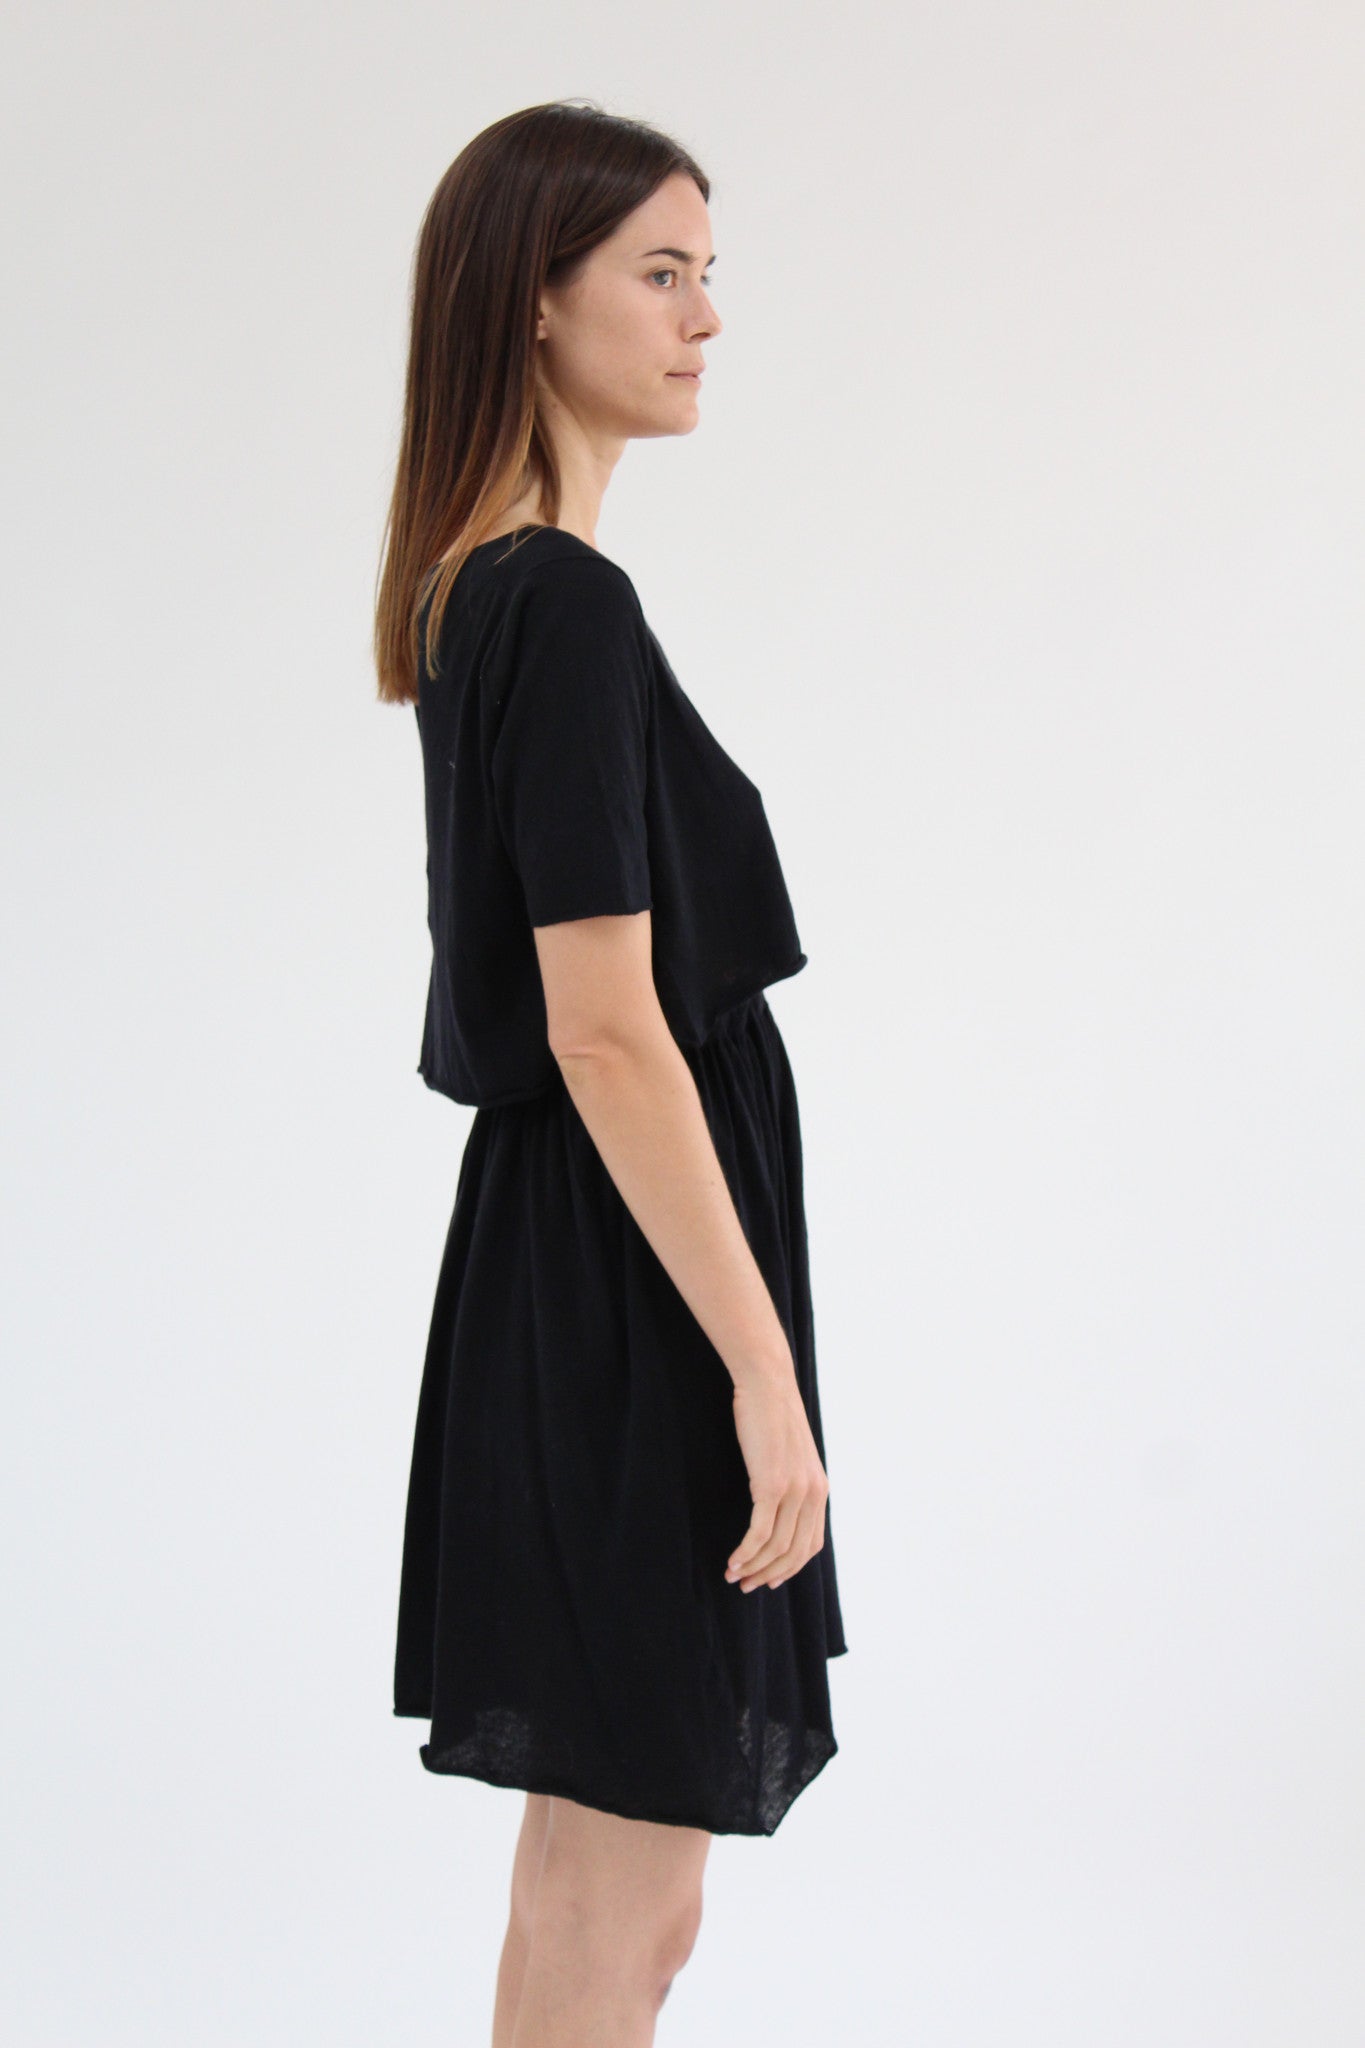 Lina Rennell Detached Dress Black / BEKLINA